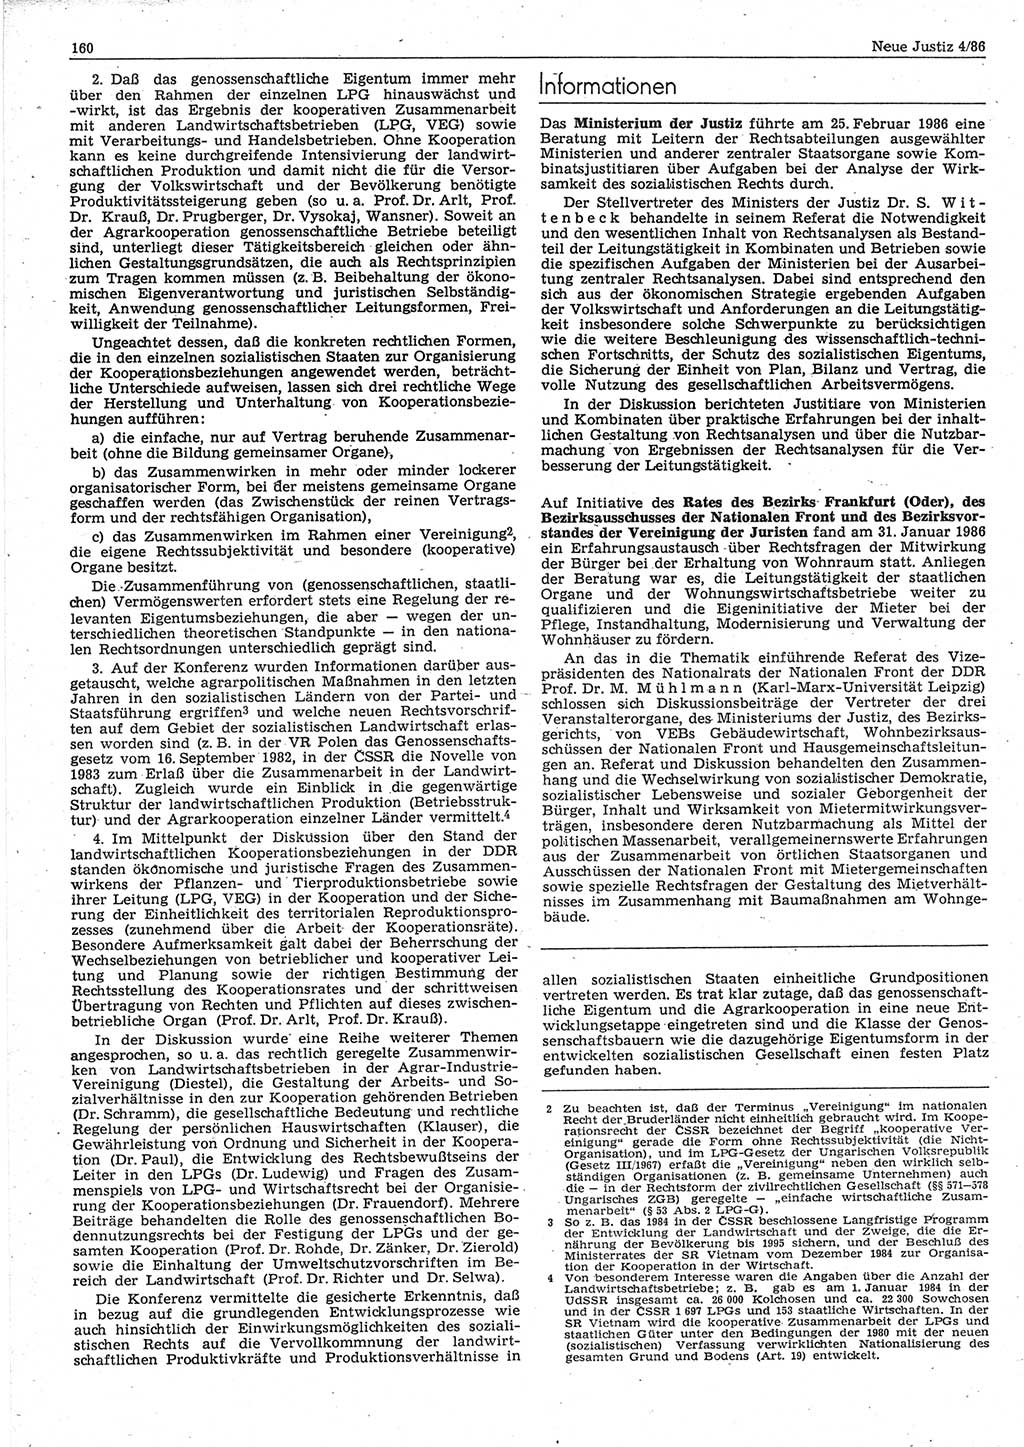 Neue Justiz (NJ), Zeitschrift für sozialistisches Recht und Gesetzlichkeit [Deutsche Demokratische Republik (DDR)], 40. Jahrgang 1986, Seite 160 (NJ DDR 1986, S. 160)